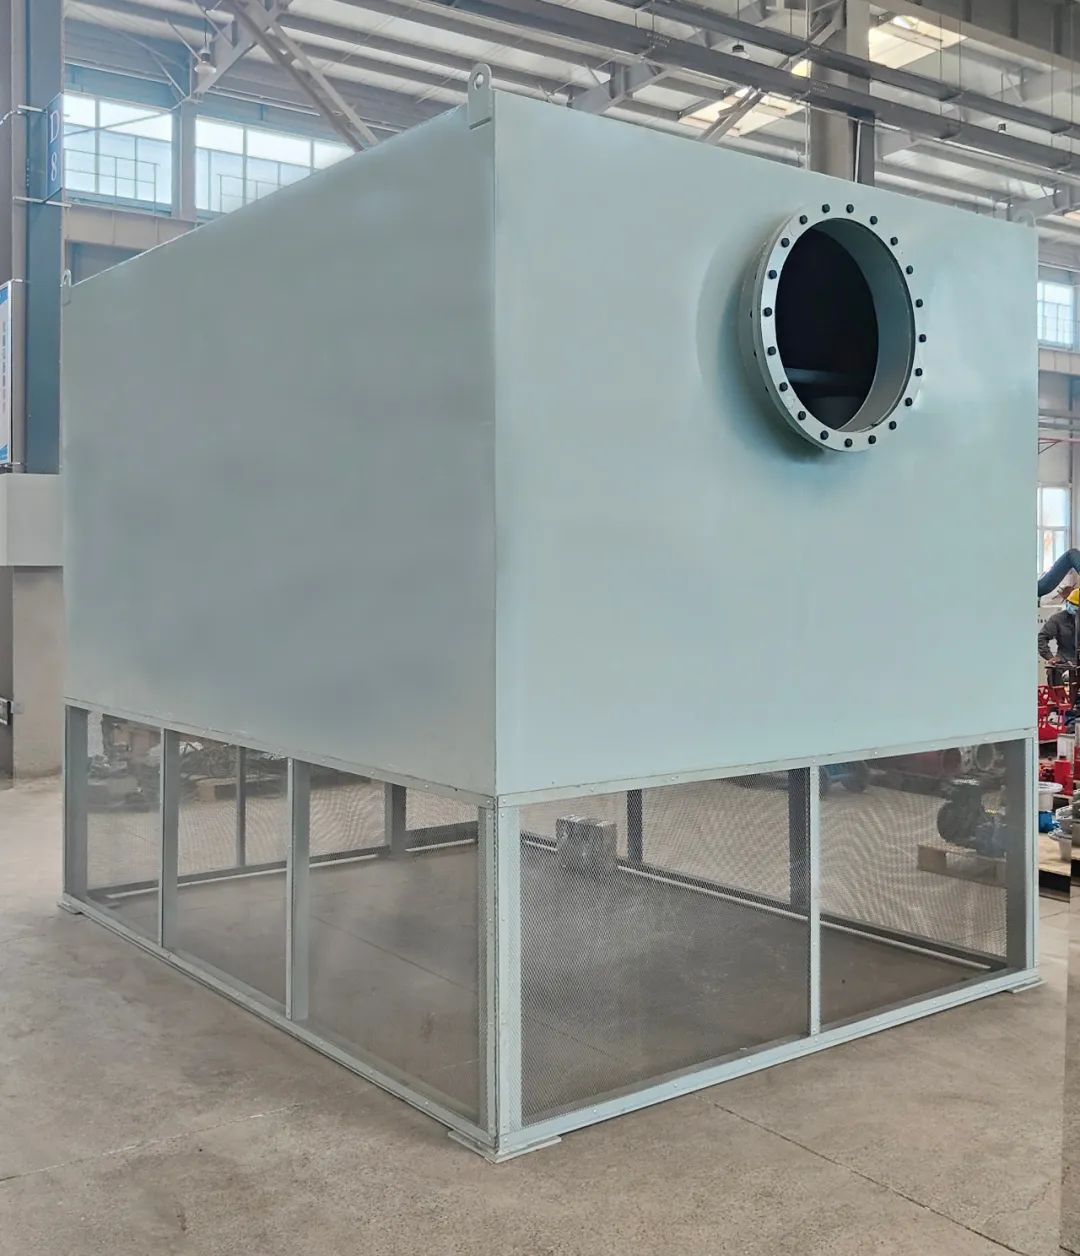 【案例】宁夏某钢厂自洁式空气过滤设备改造